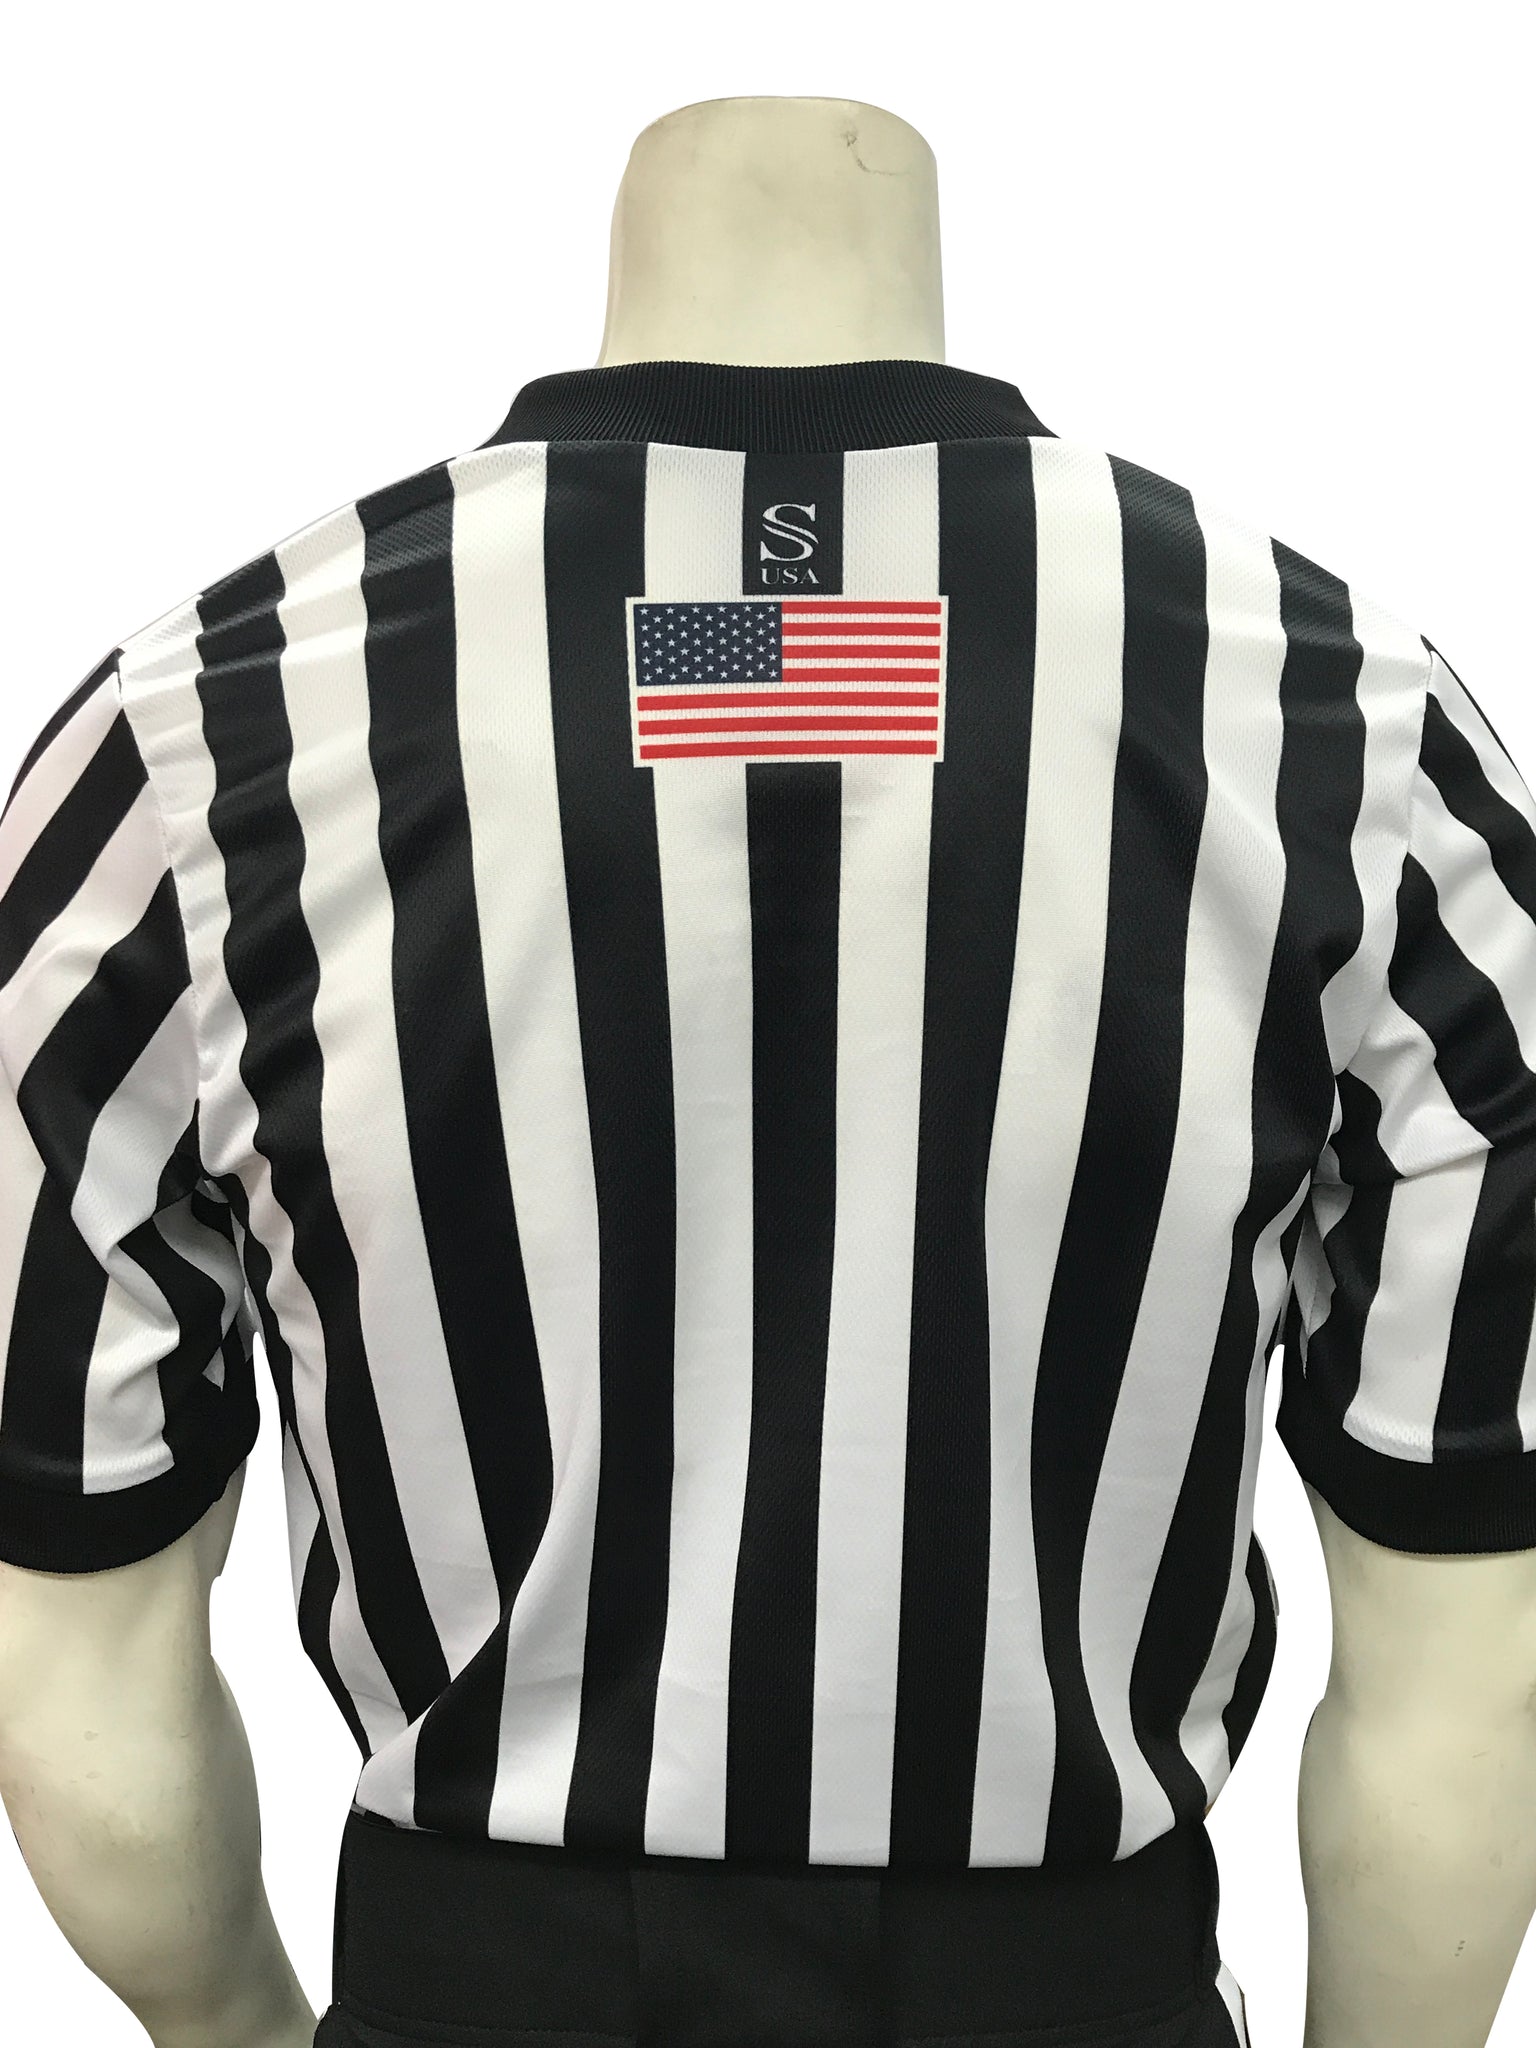 I200-WFBK - Smitty "Made in USA" - WFBK IAABO Basketball Men's Short Sleeve Shirt